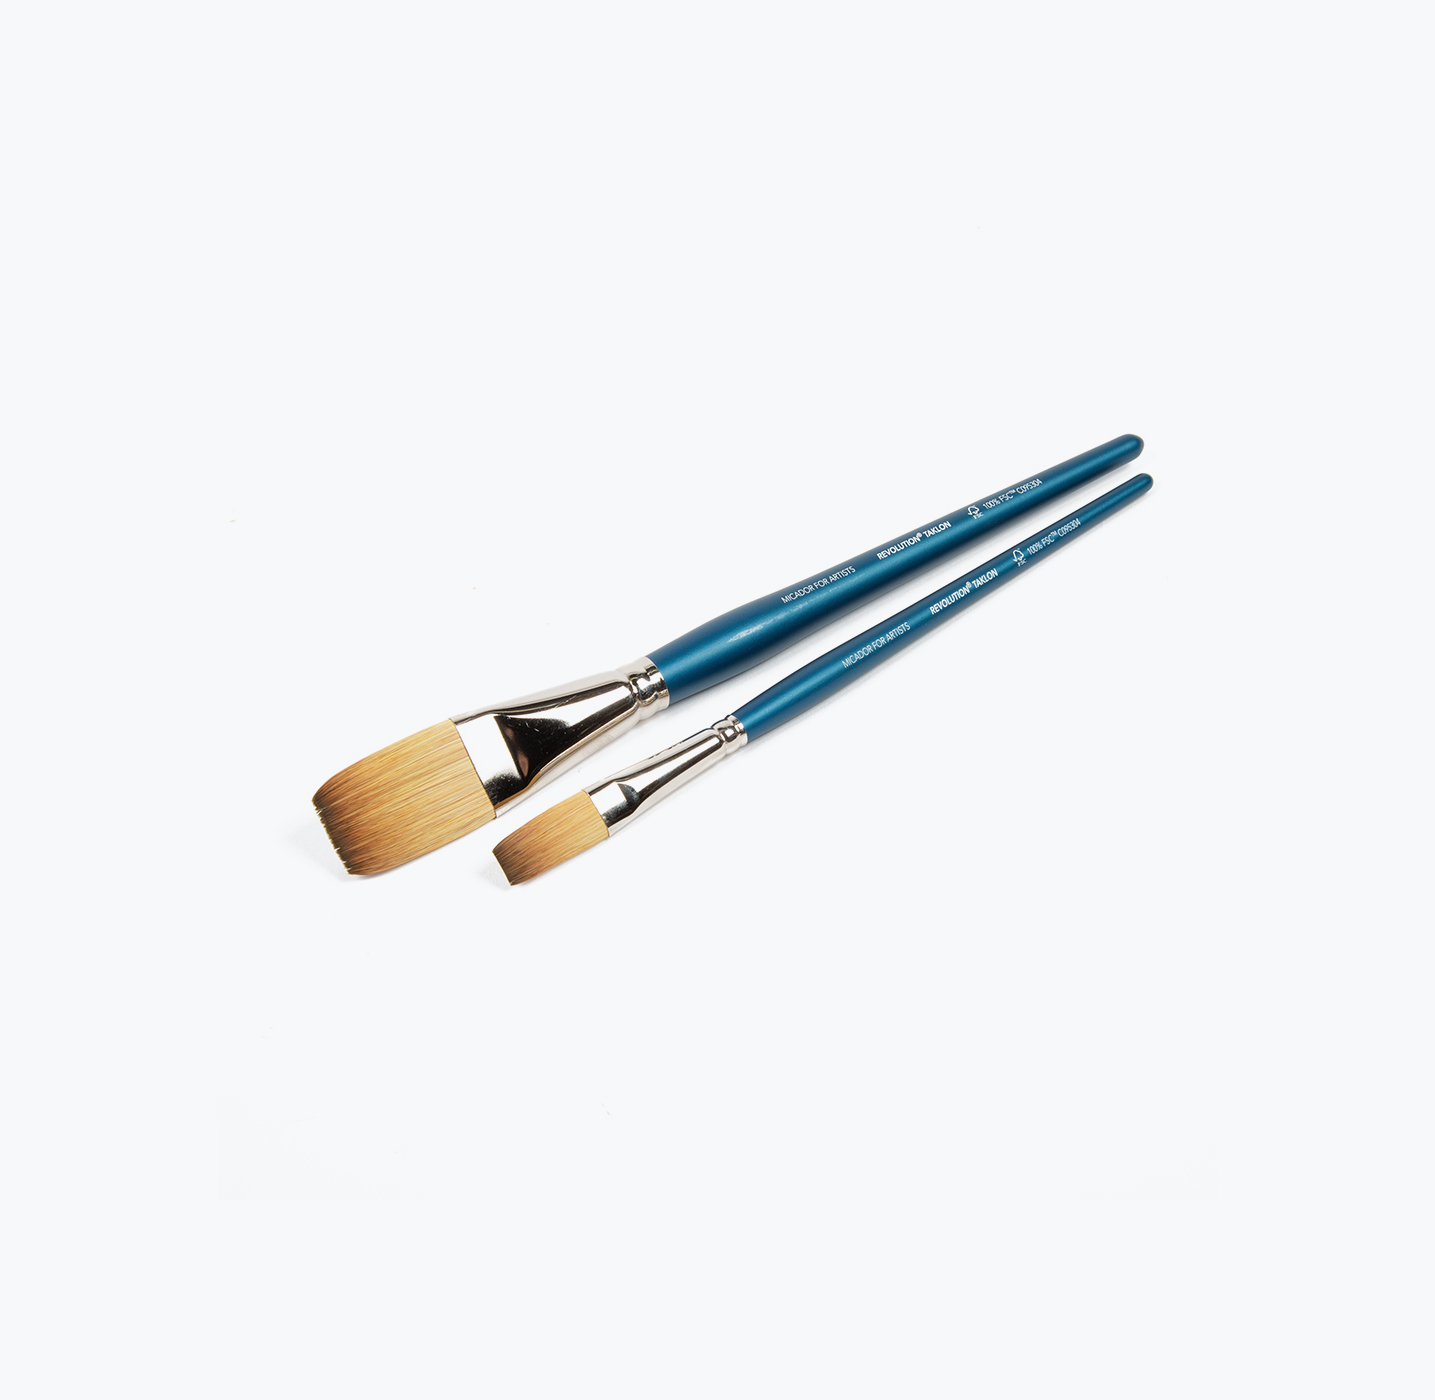 Junior Acrylic Paintbrush Set (3 Brushes)